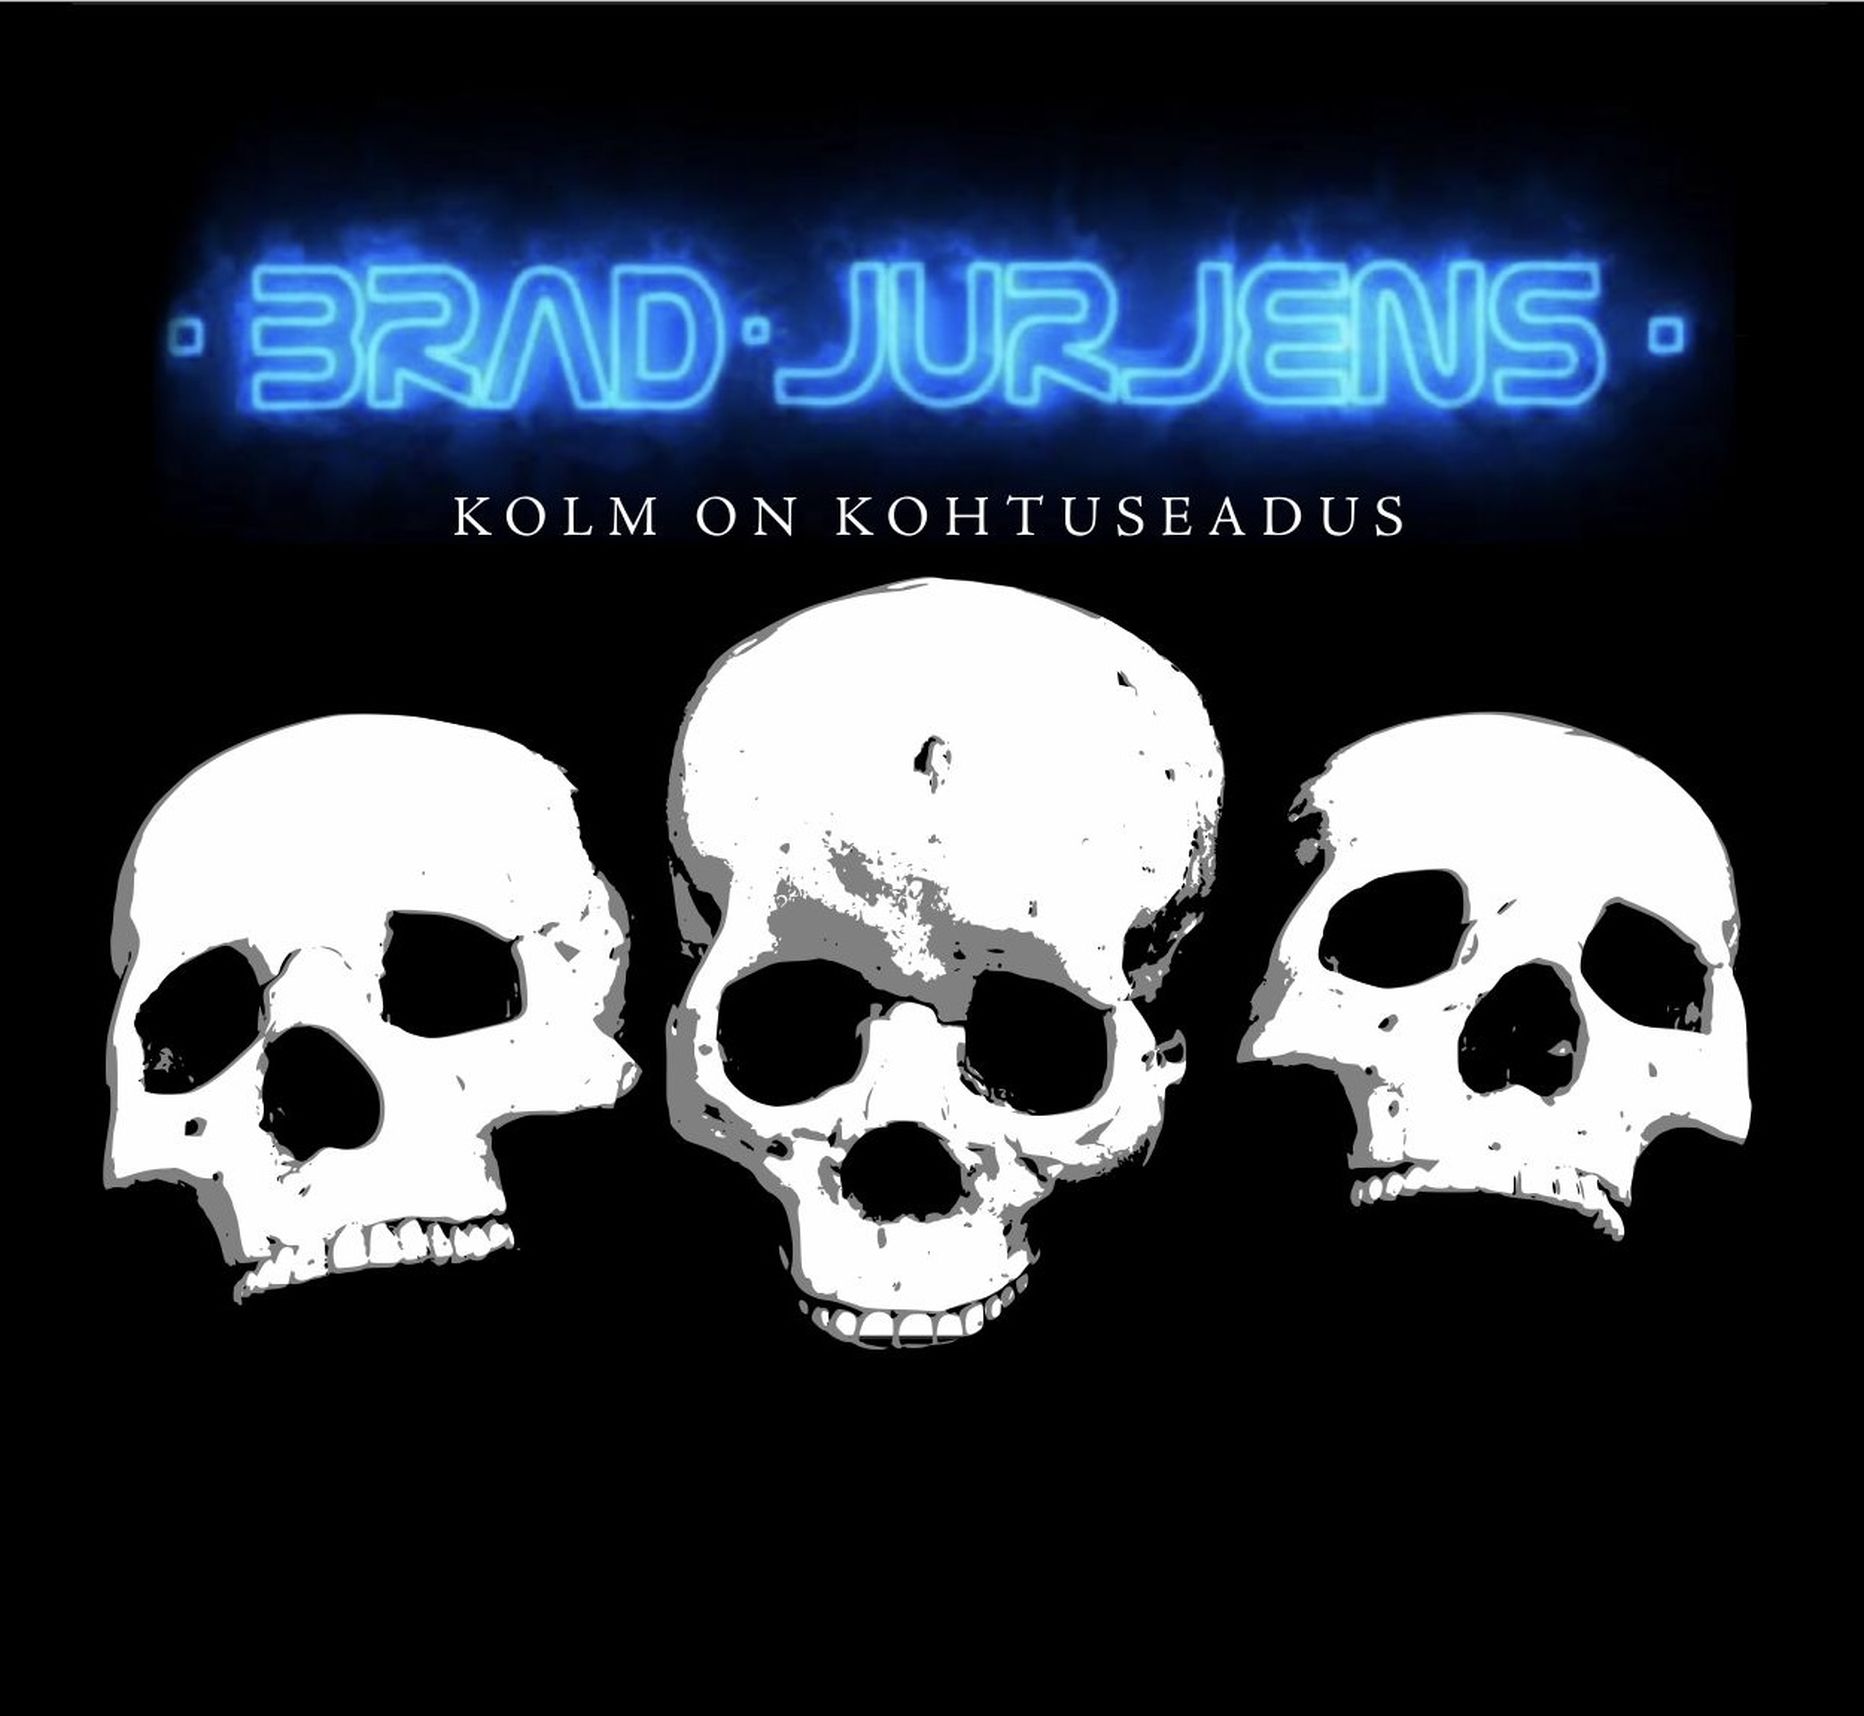 Brad Jurjens ja laulja Freddy Tomingas on valmis saanud uue loo nimega «Kolm on kohtuseadus».